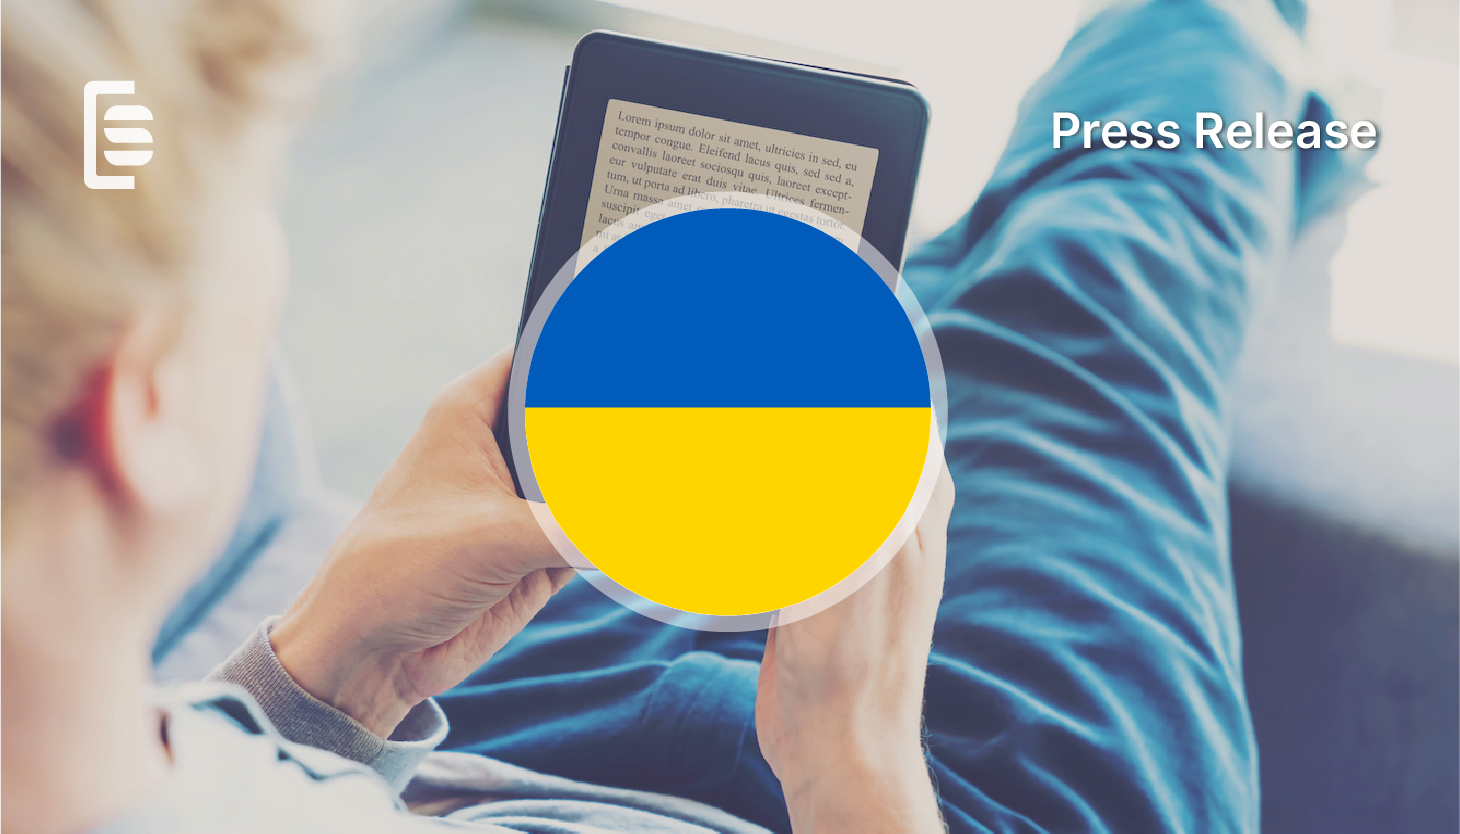 StreetLib offre la distribuzione gratuita di ebook a editori e autori indipendenti ucraini